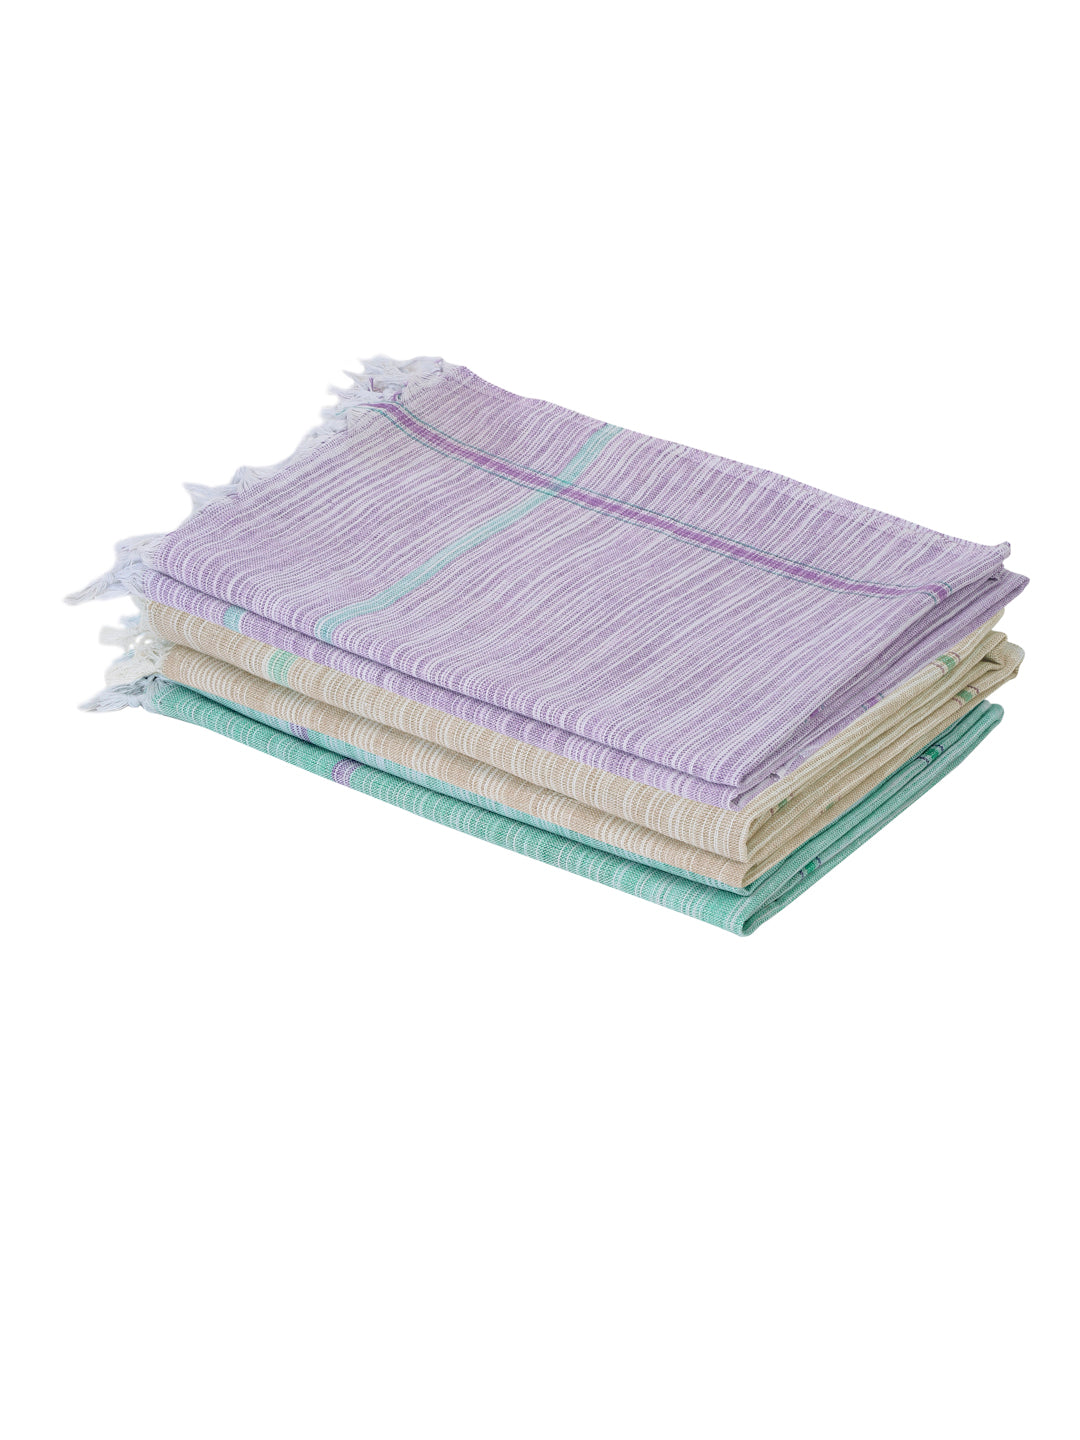 Klotthe Unisex Set of 6 MultiColor Striped Cotton Bath Towels